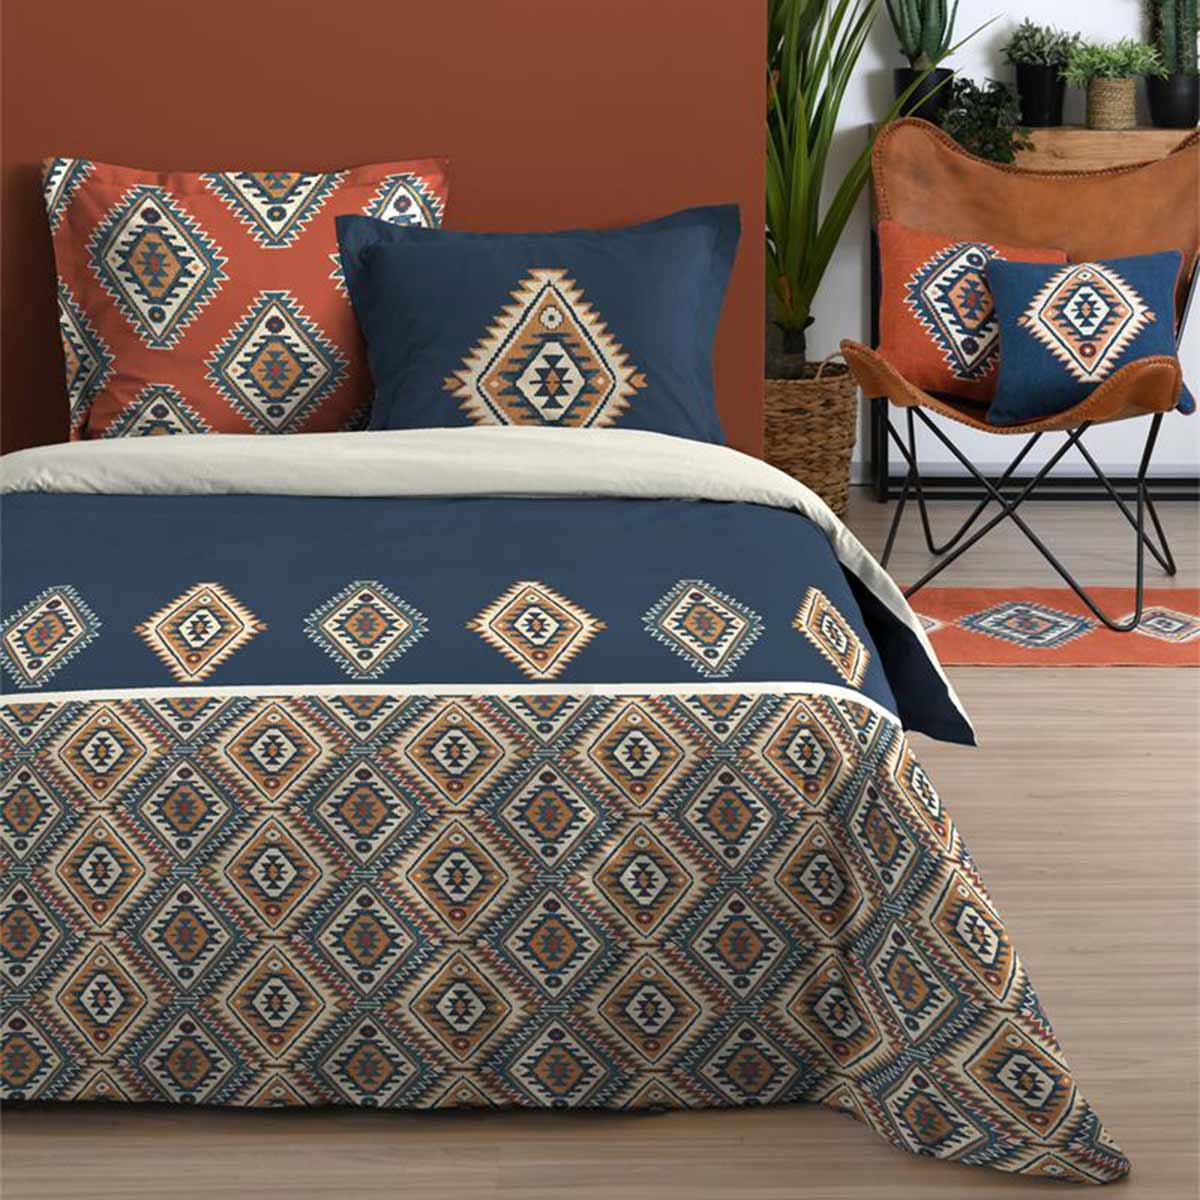 Louisiana Bedclothes 220 x 240 cm